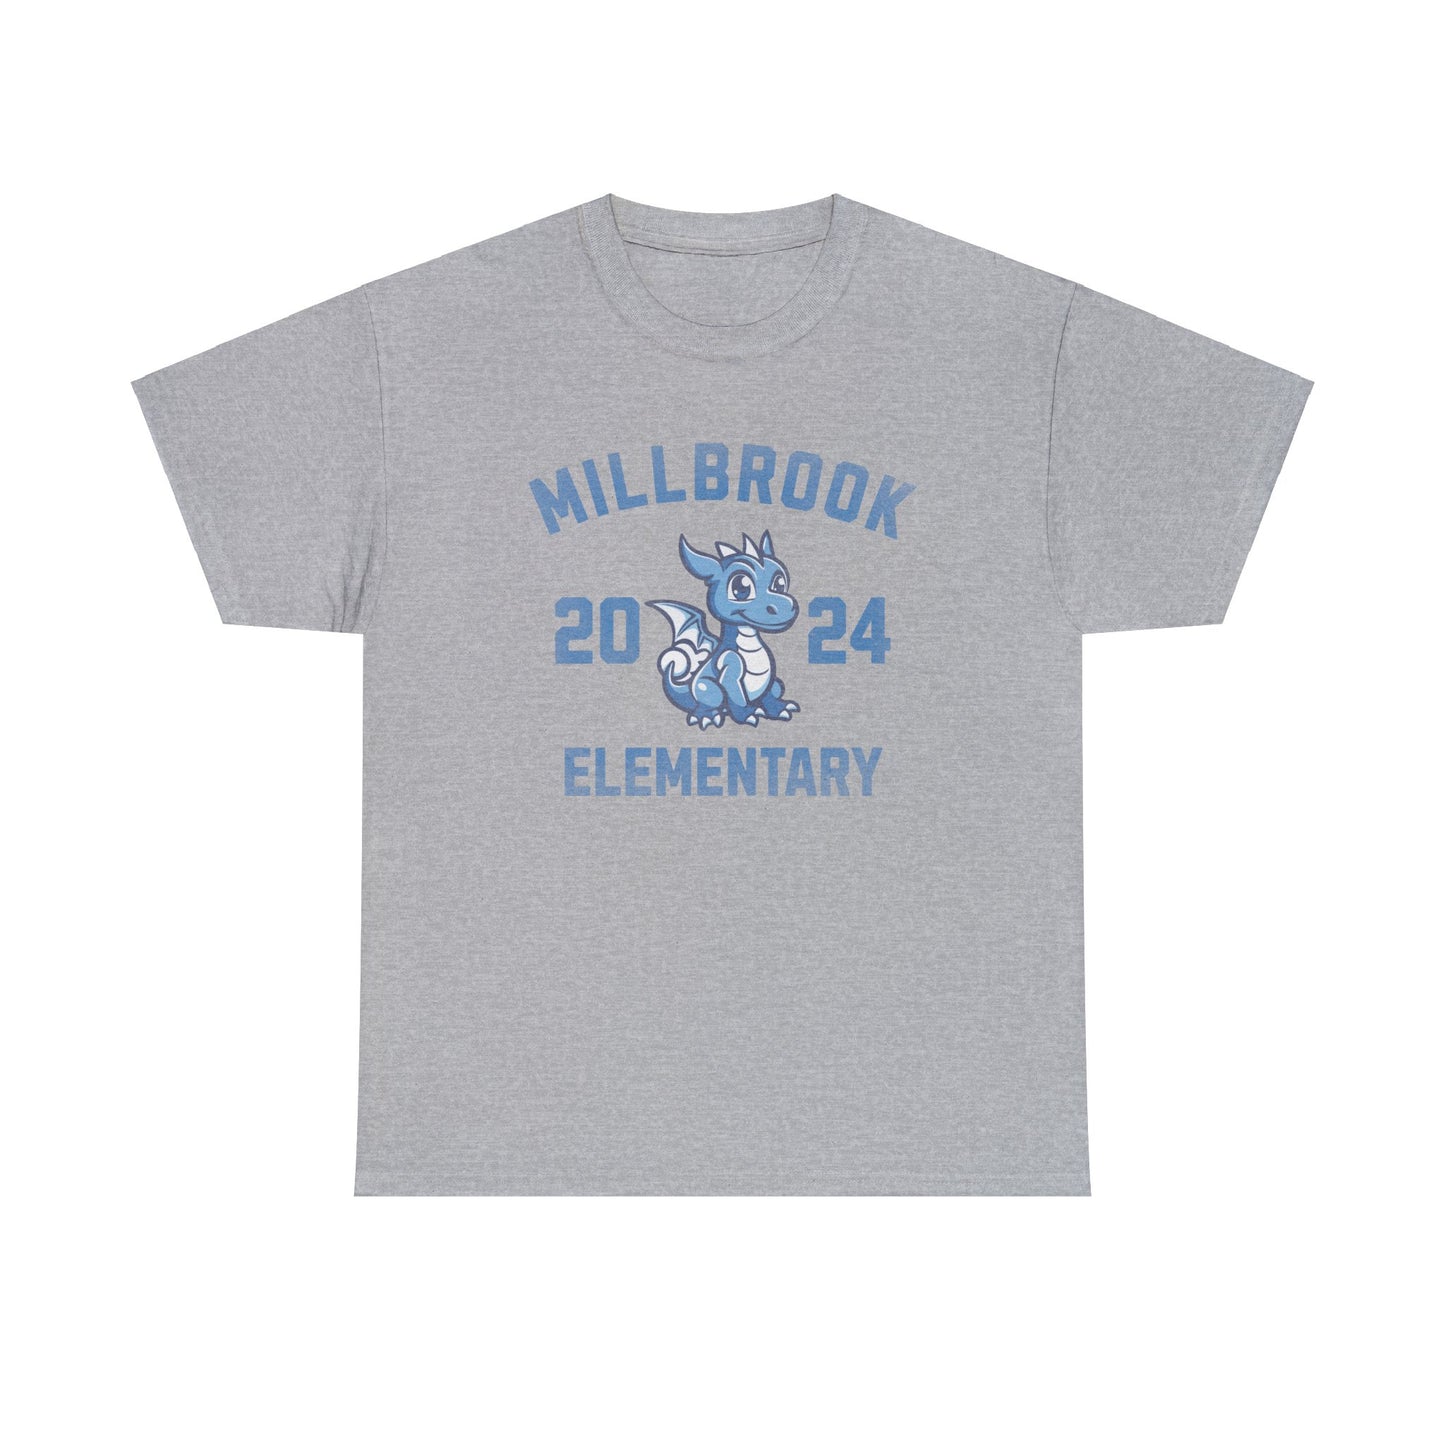 Millbrook Elementary 2024 Tee - Adult